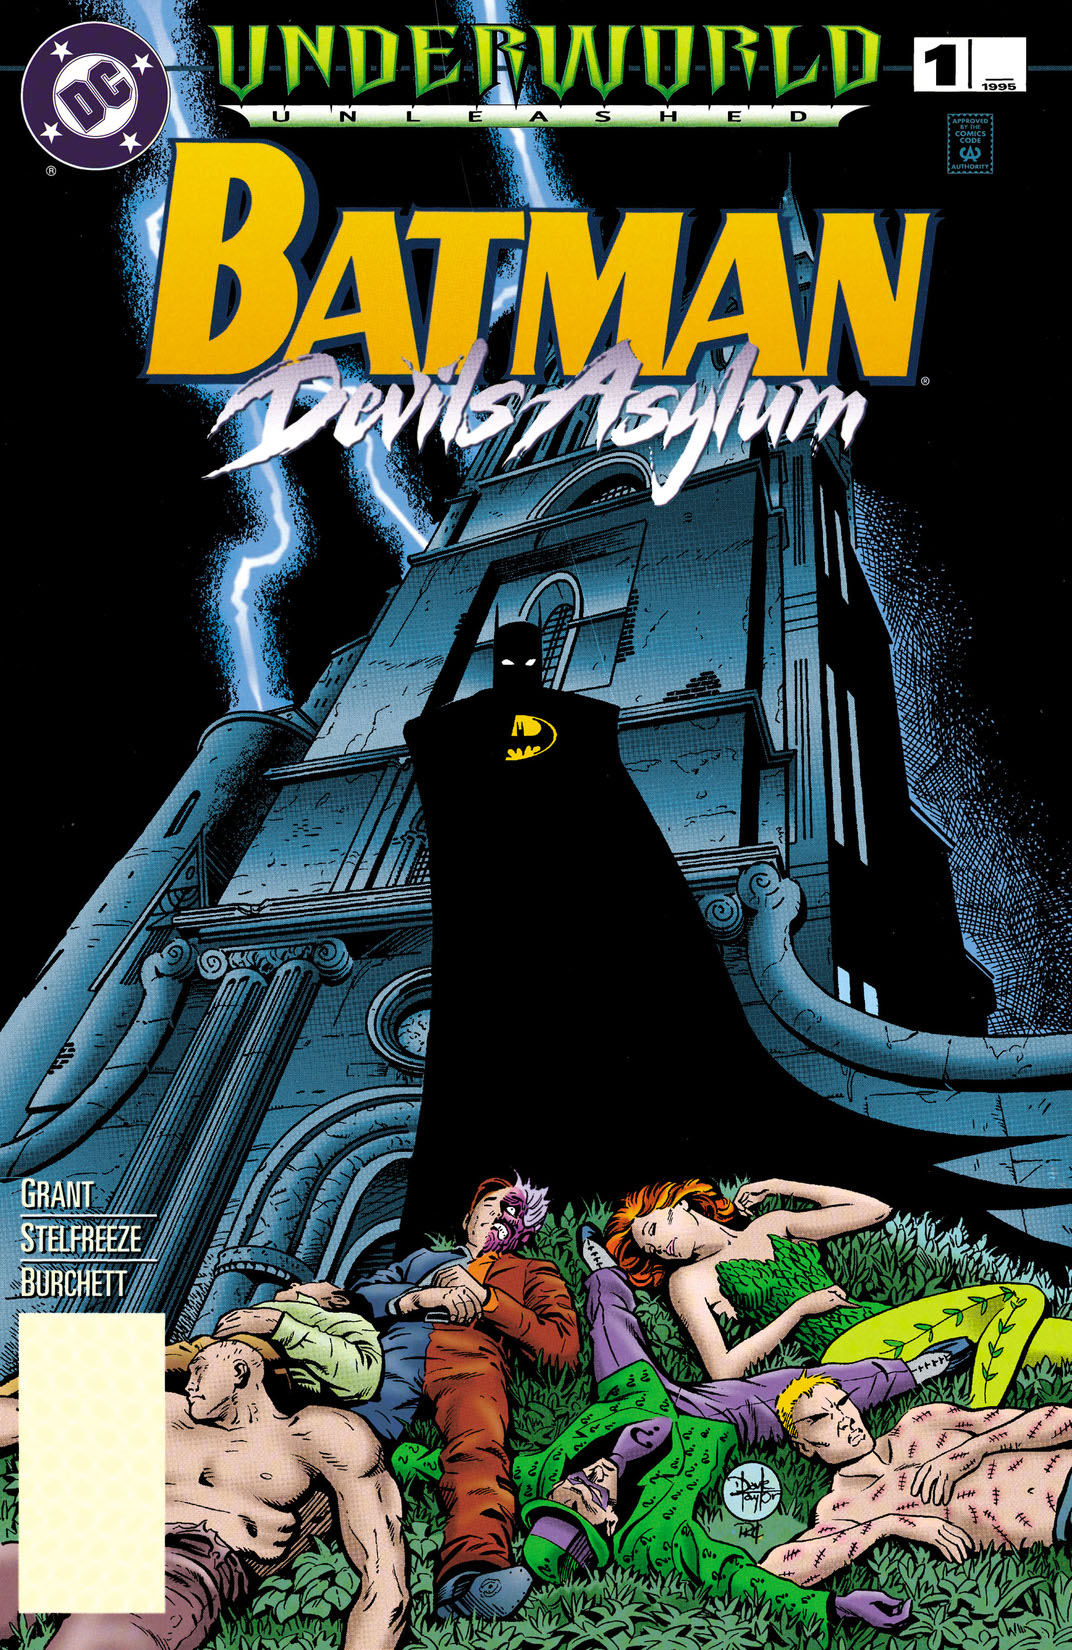 Underworld Unleashed: Batman--Devil's Asylum #1 preview images